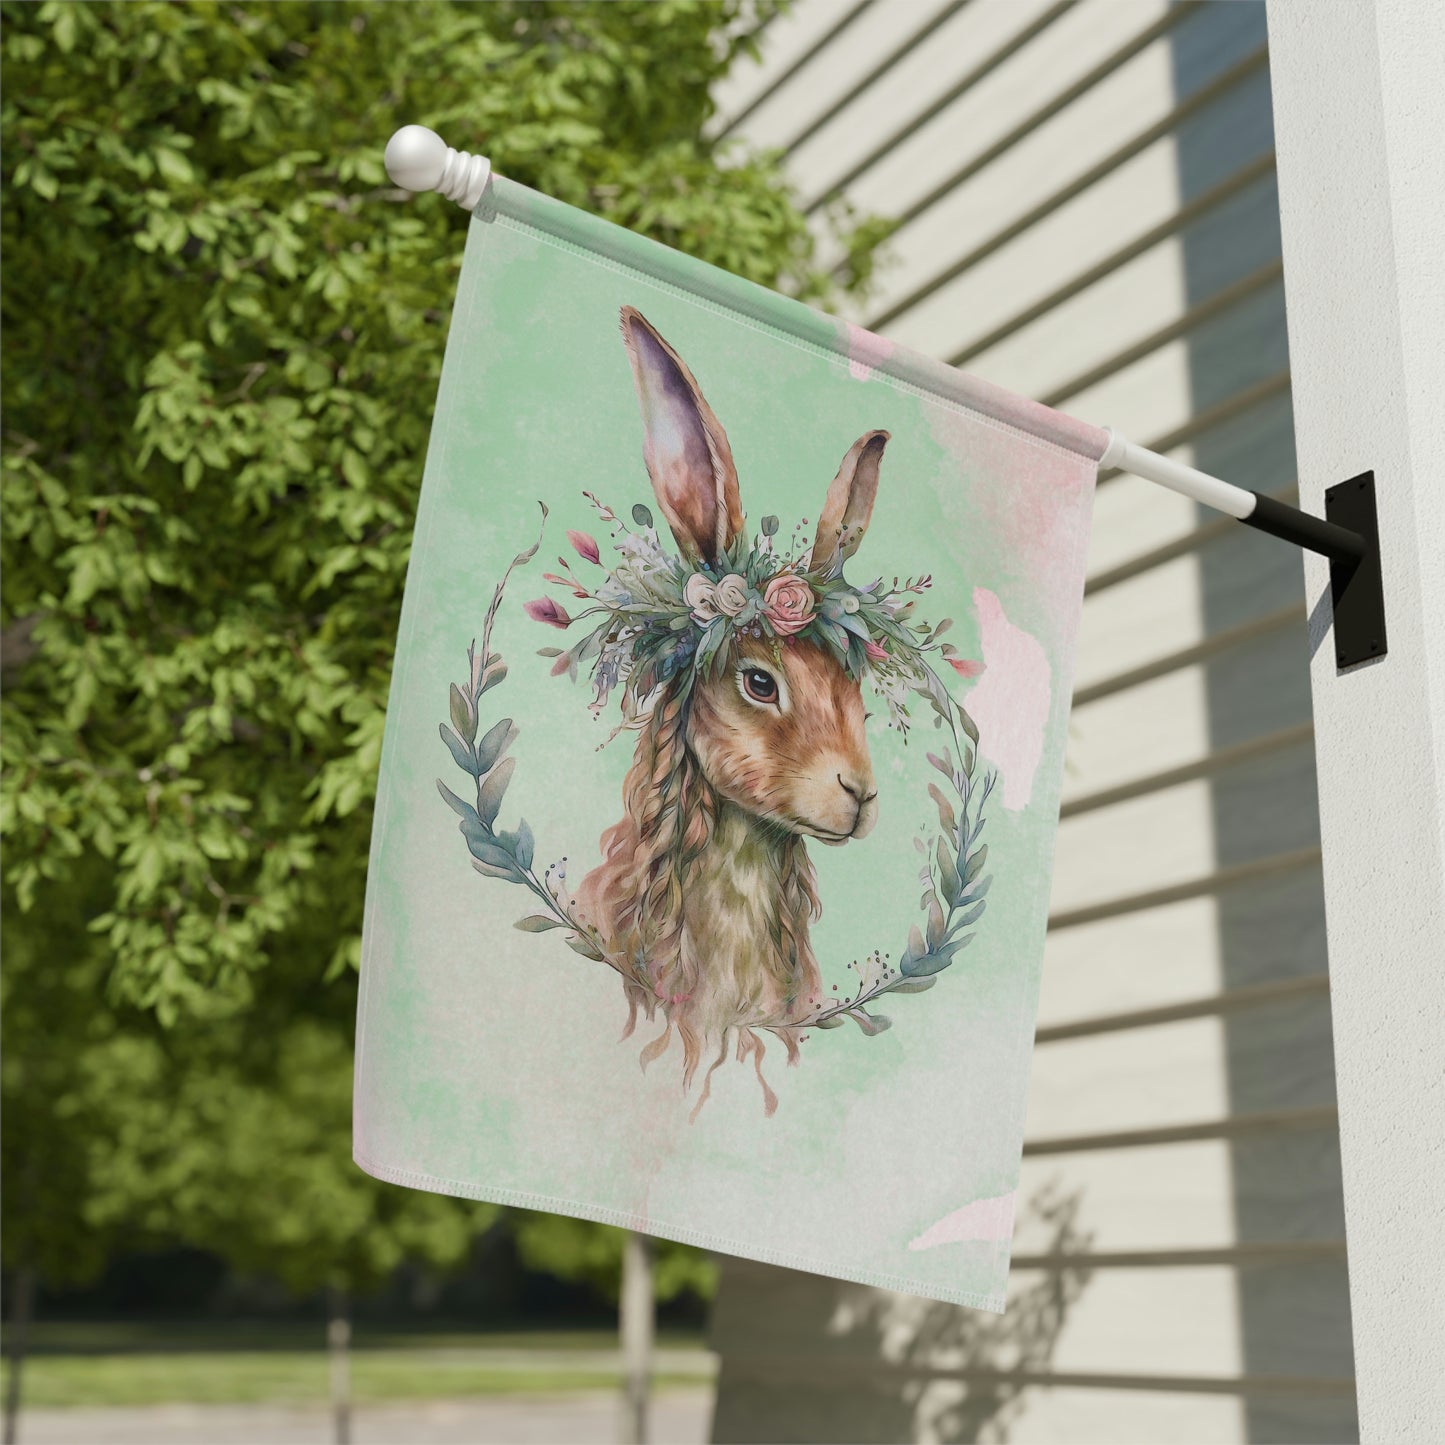 Rabbit in Spring Wreath Garden & House Banner